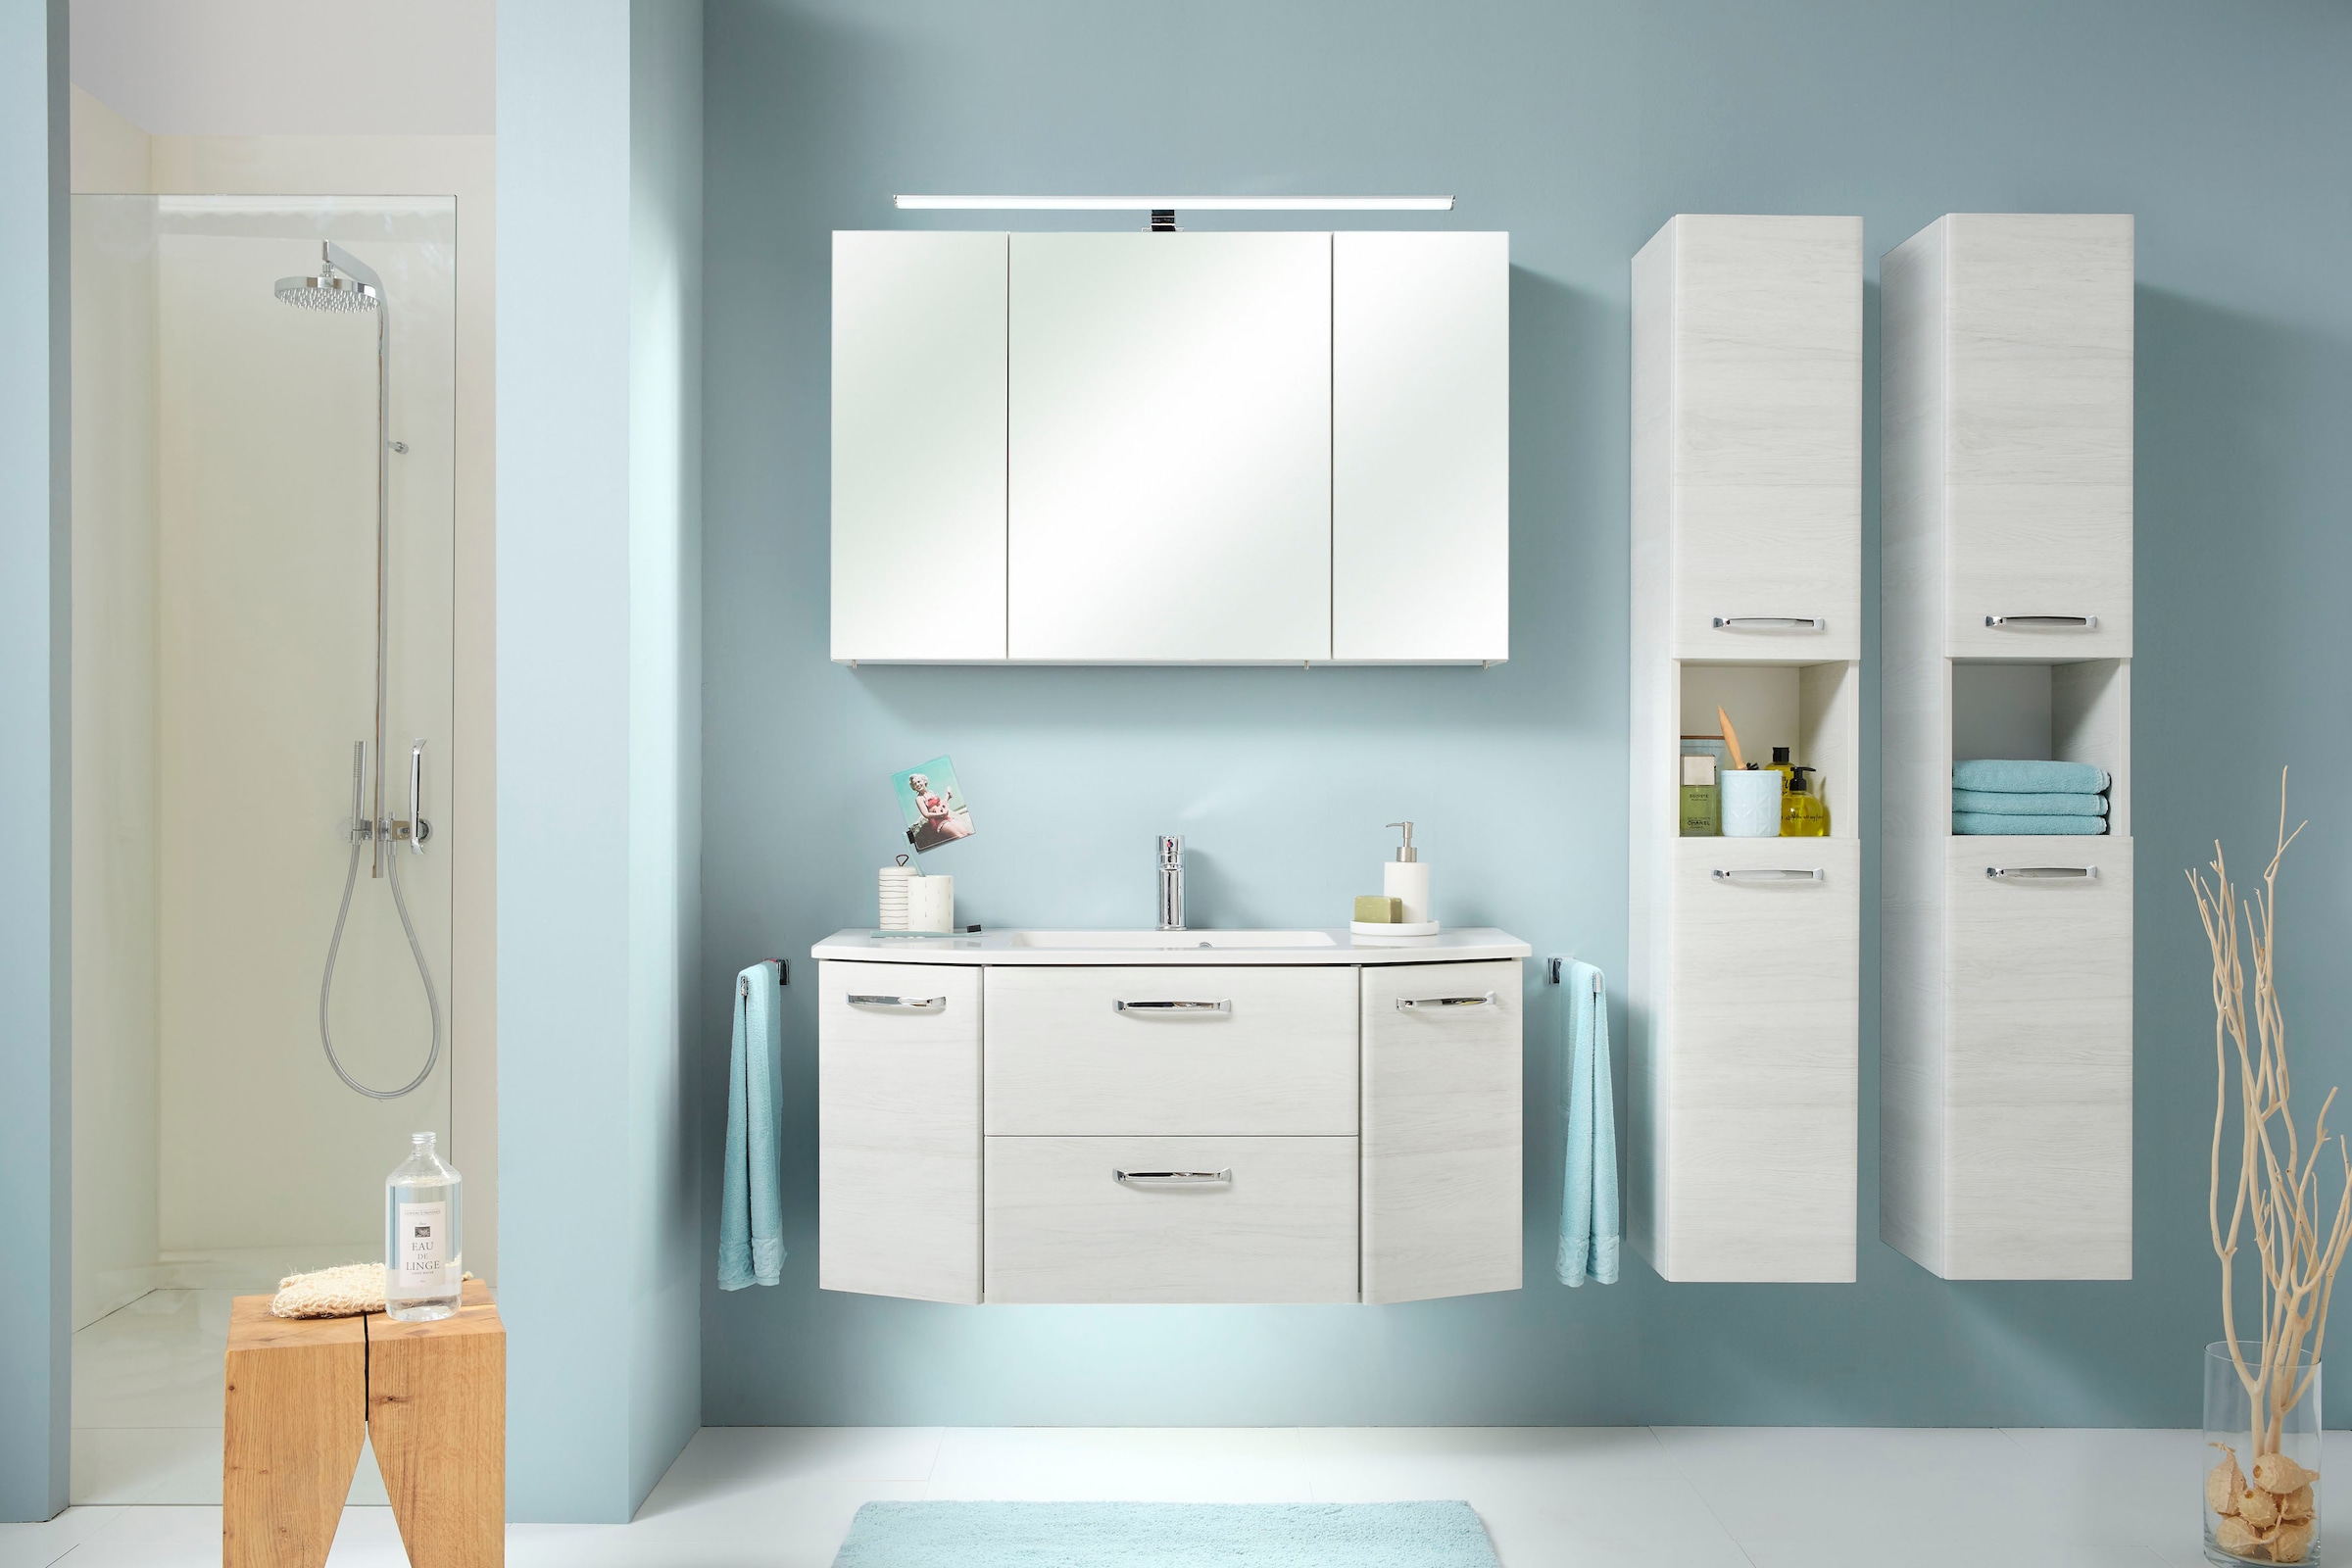 Saphir Spiegelschrank »Quickset Badezimmer-Spiegelschrank inkl LED-Aufsatzleuchte«, 110 cm breit, inkl. Türdämpfer, 3 Spiegeltüren, mit Steckdose